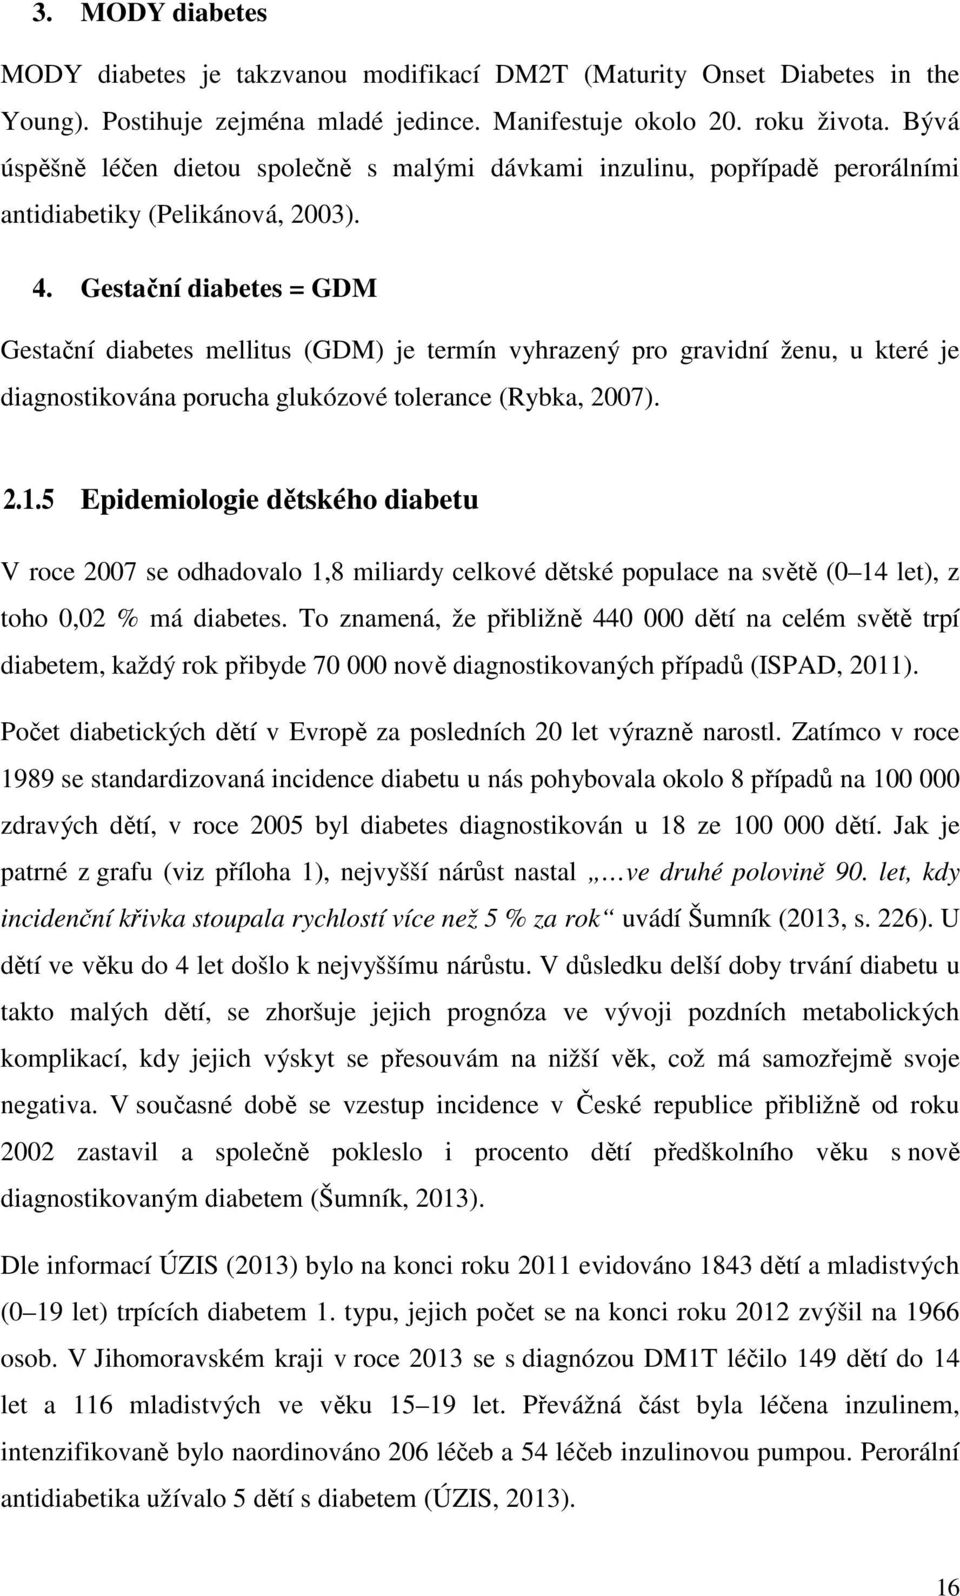 Gestační diabetes = GDM Gestační diabetes mellitus (GDM) je termín vyhrazený pro gravidní ženu, u které je diagnostikována porucha glukózové tolerance (Rybka, 2007). 2.1.